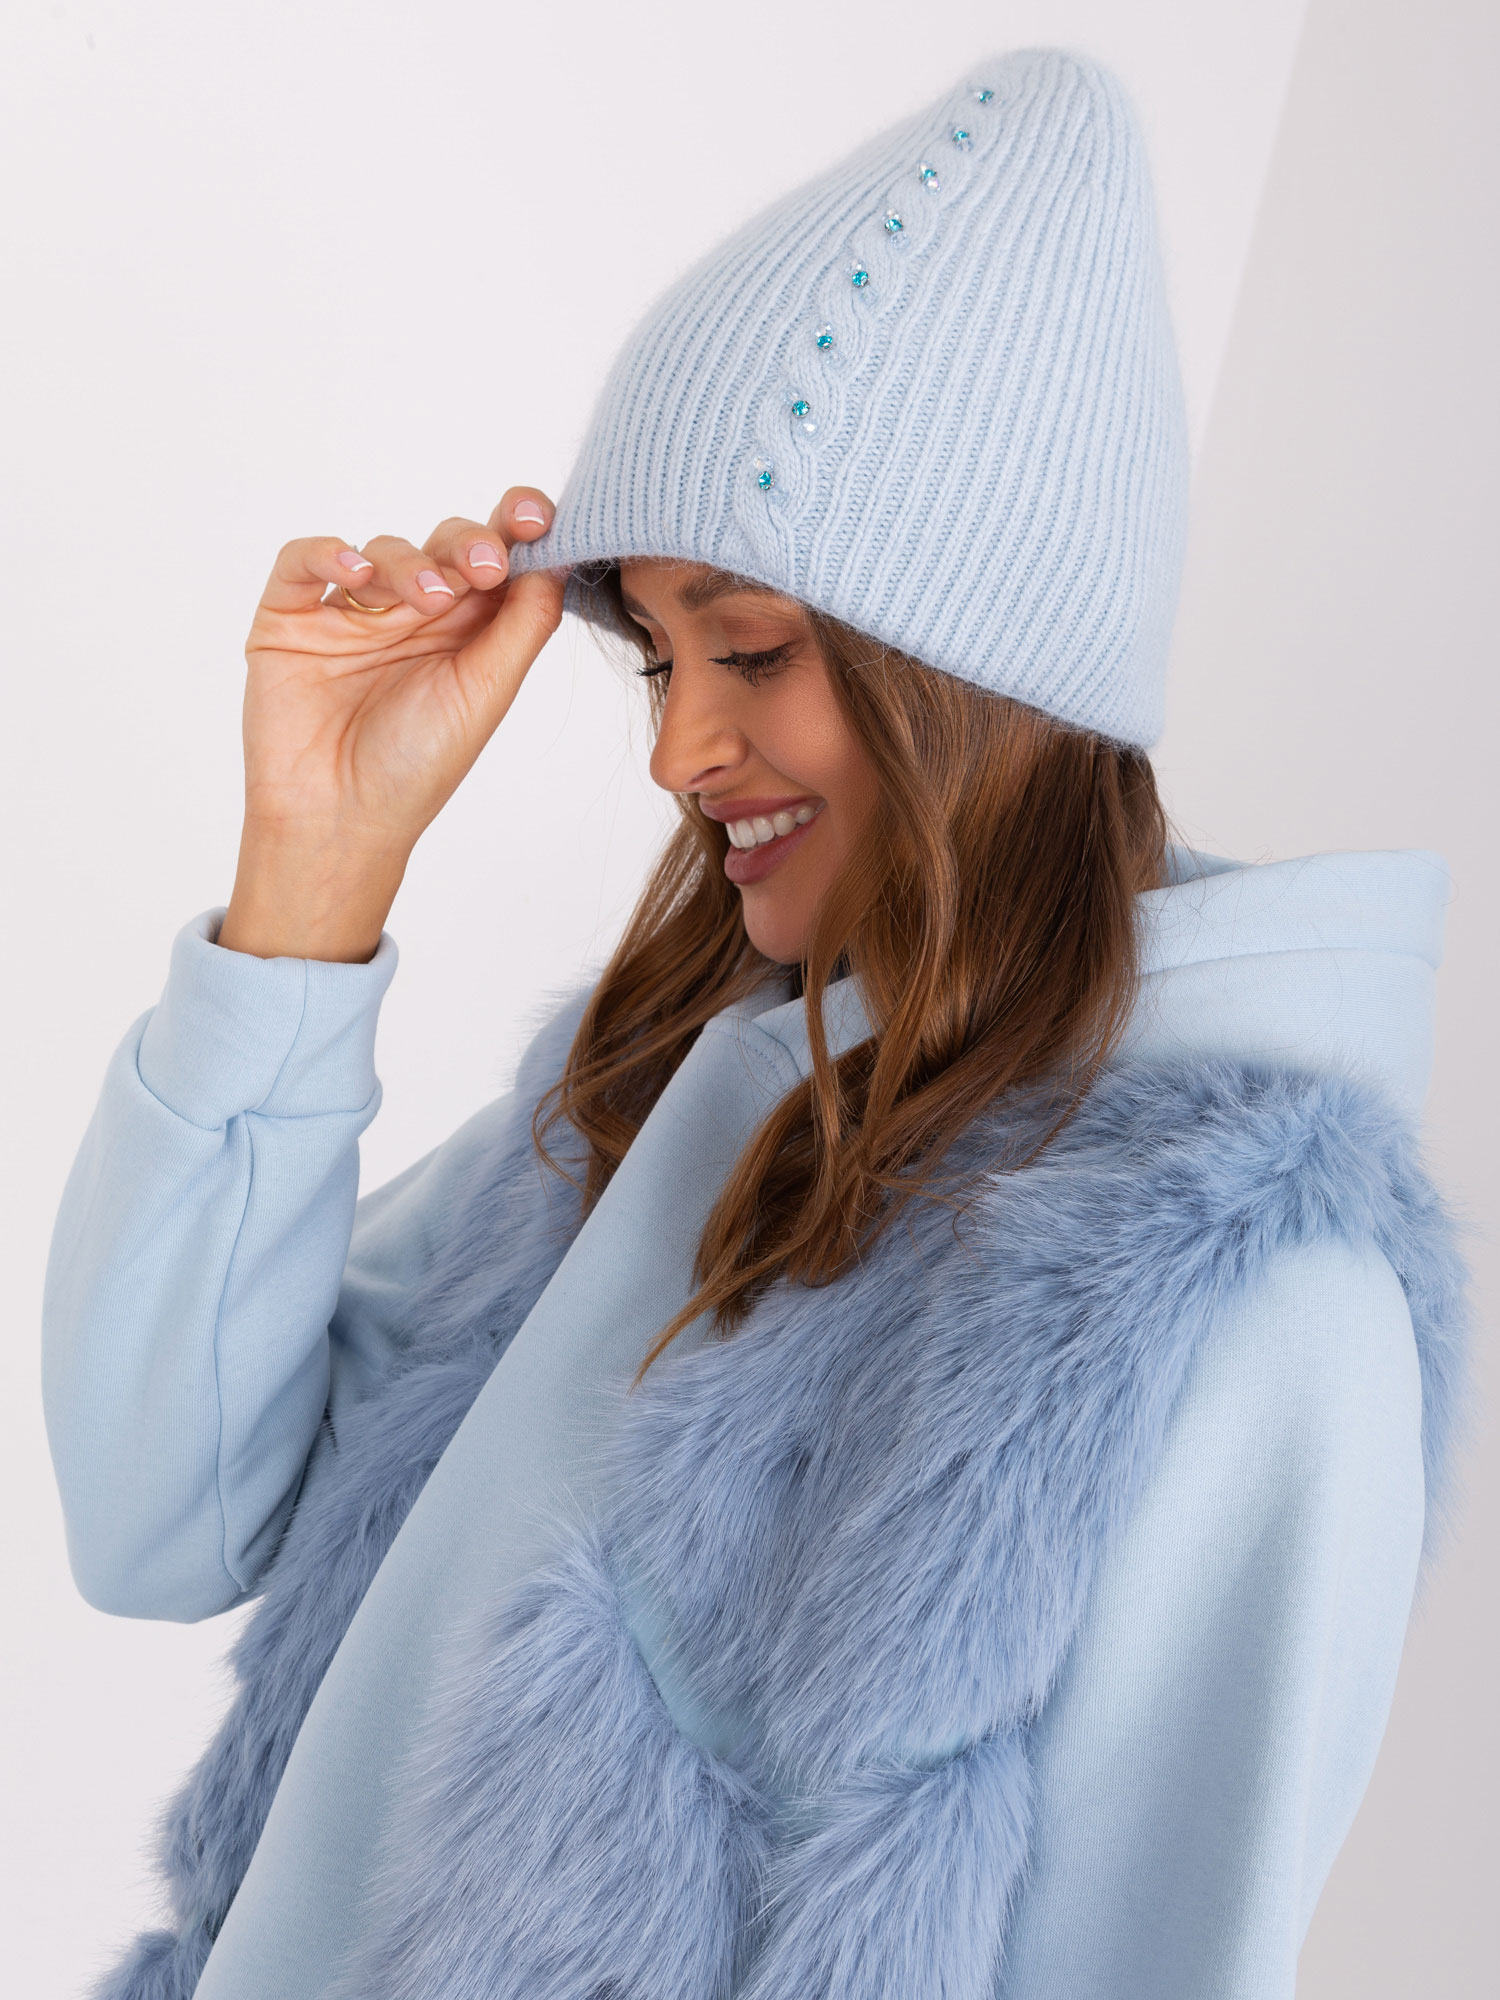 Women's winter hat light blue color